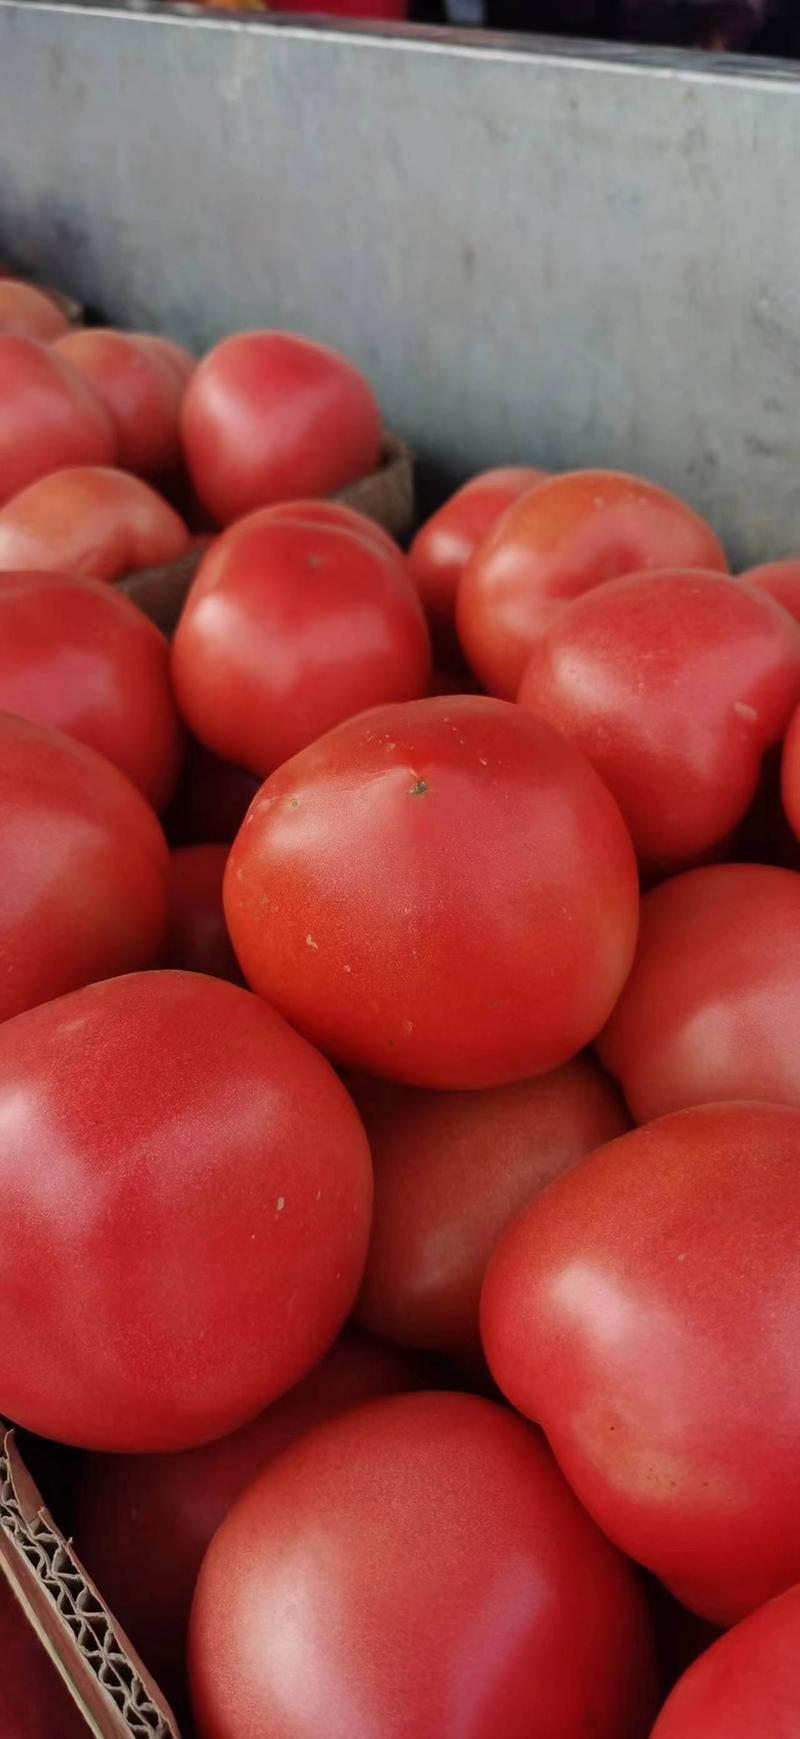 西红柿/博爱西红柿产地种植需要的老板电话联系